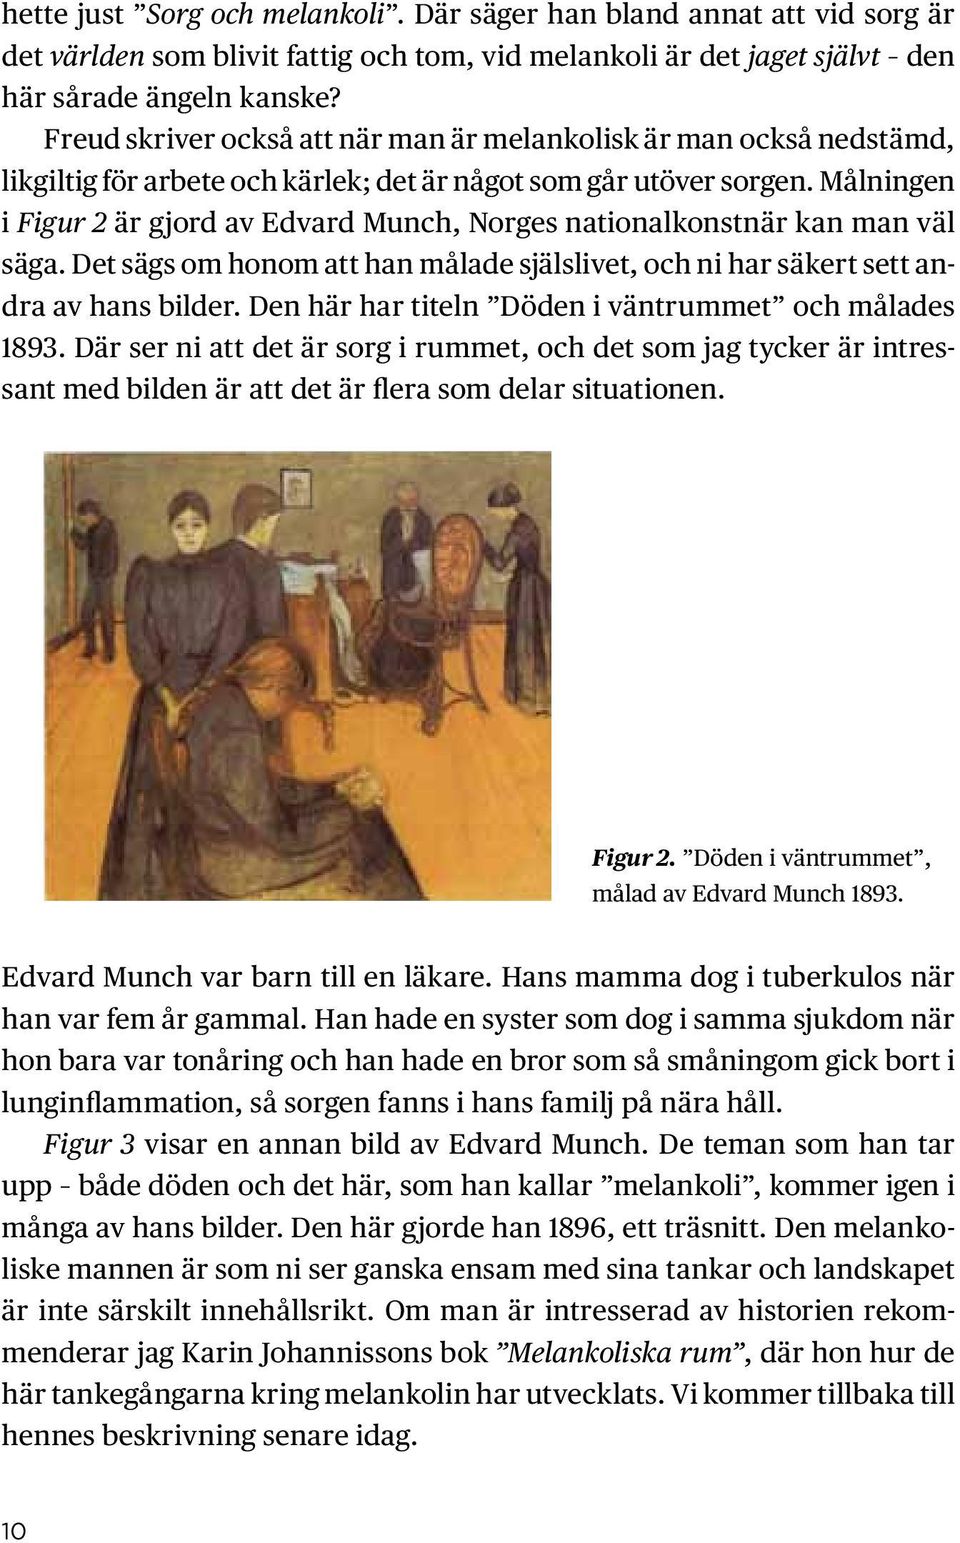 Målningen i Figur 2 är gjord av Edvard Munch, Norges nationalkonstnär kan man väl säga. Det sägs om honom att han målade själslivet, och ni har säkert sett andra av hans bilder.